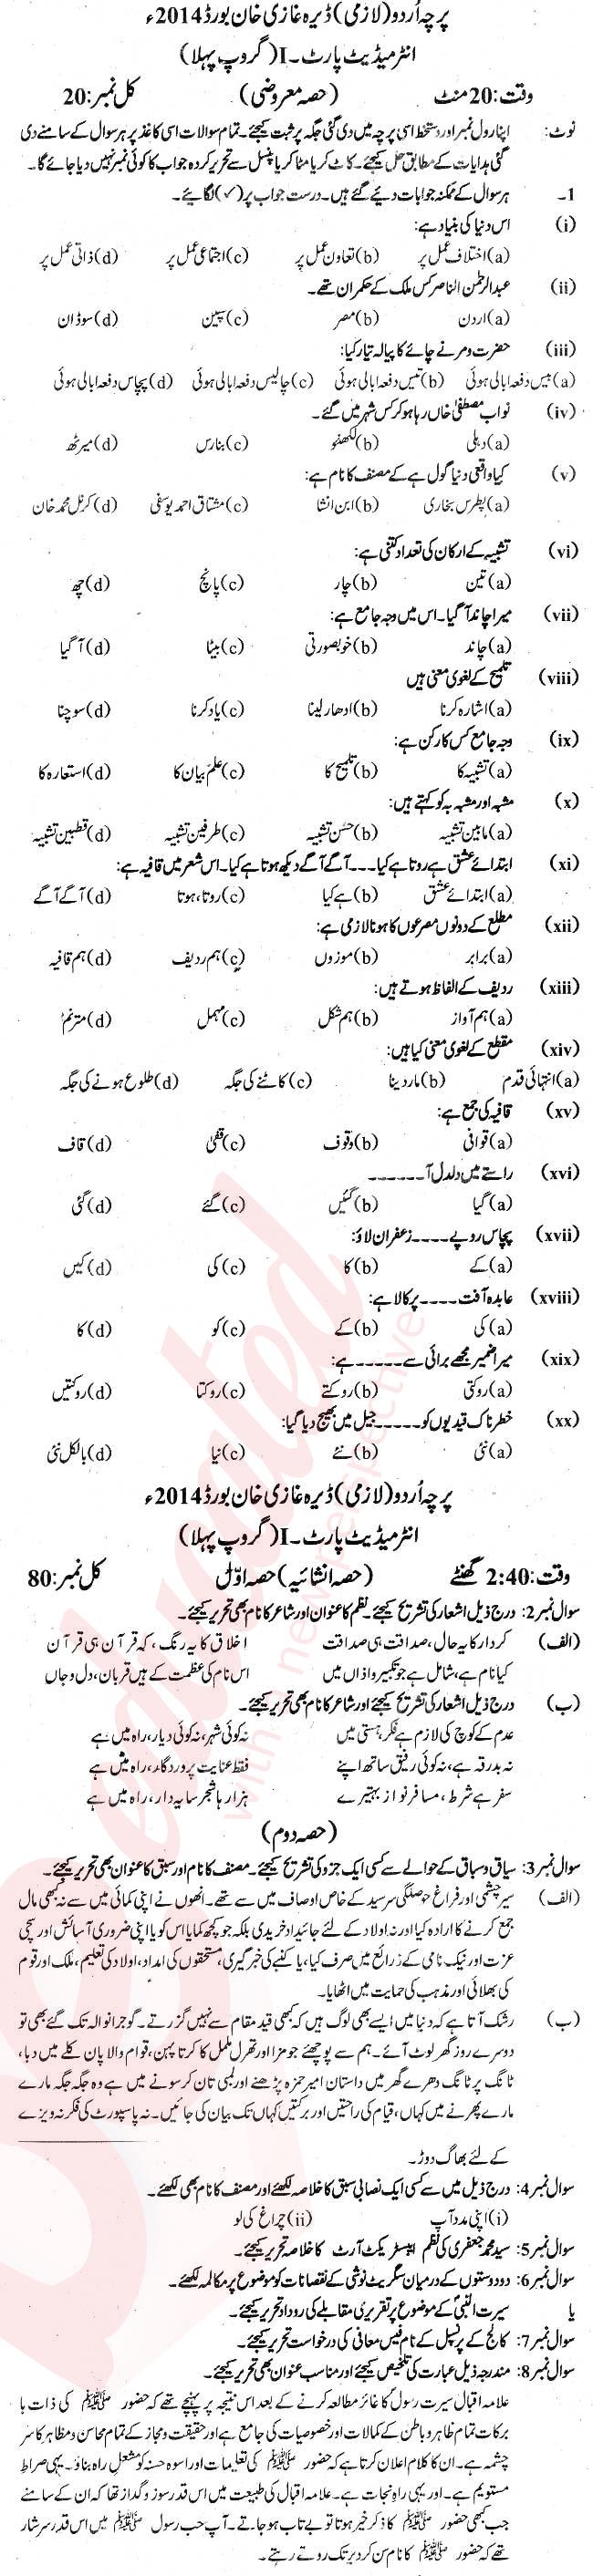 Urdu 11th class Past Paper Group 1 BISE DG Khan 2014